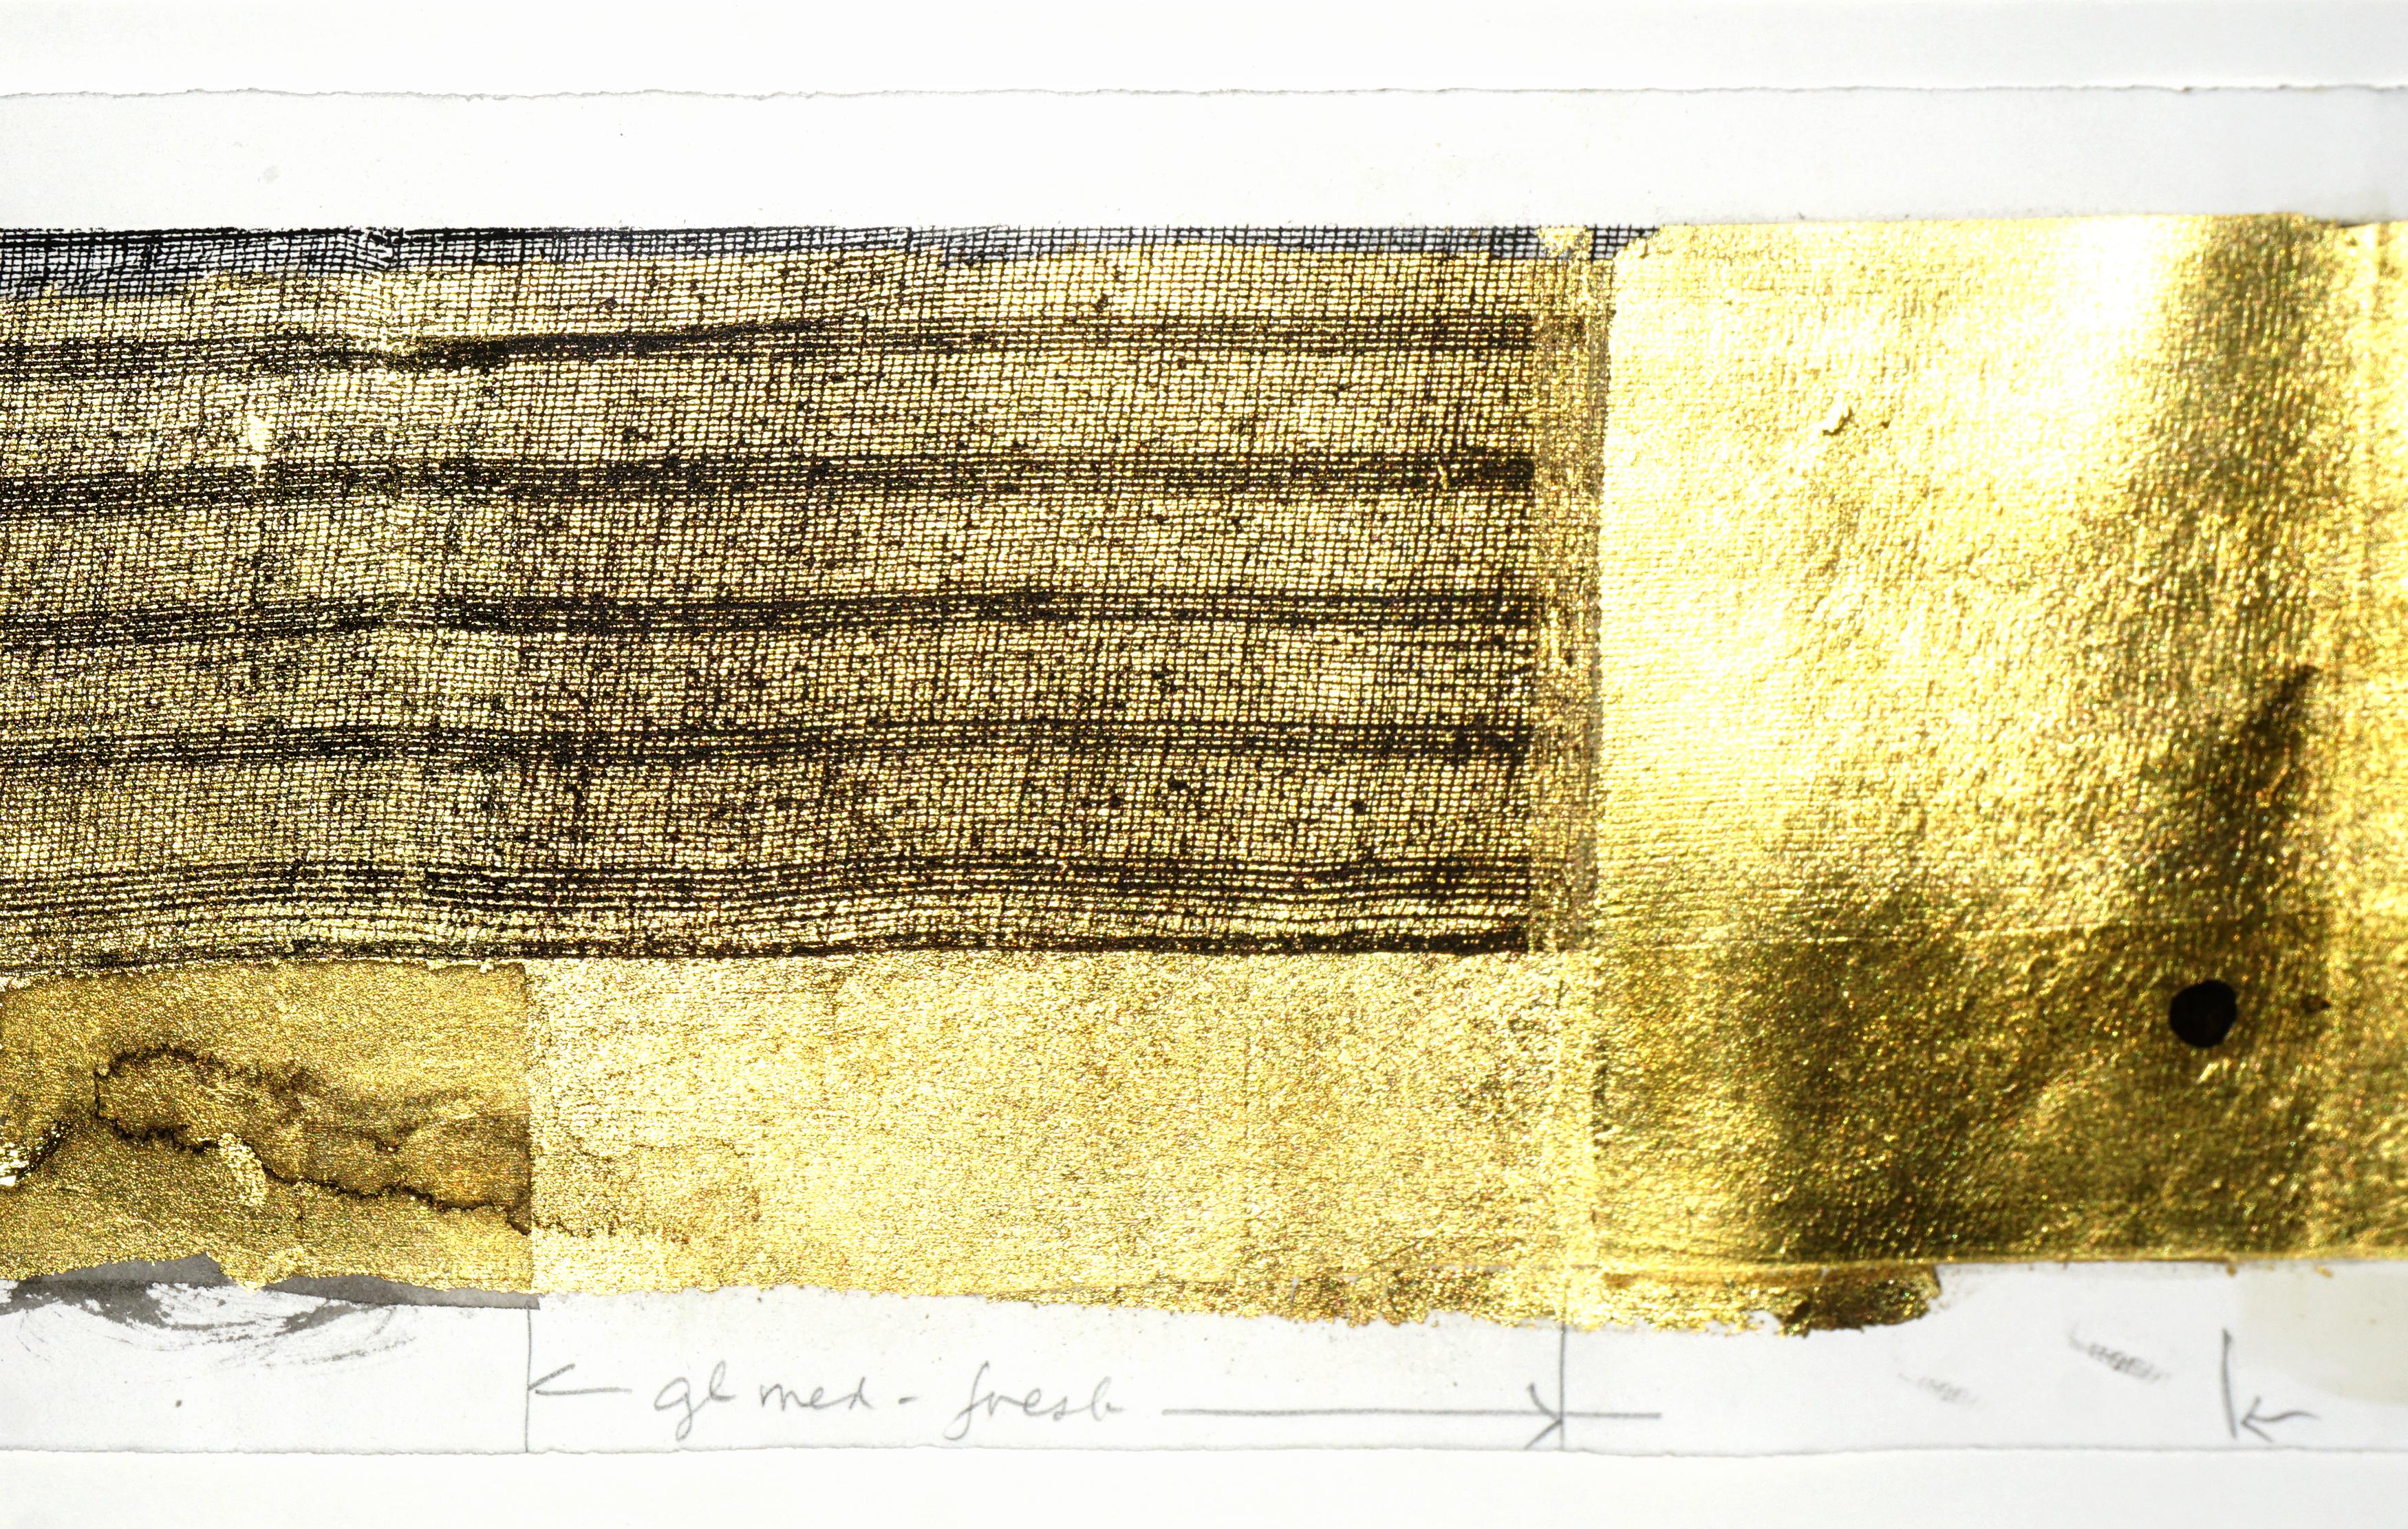 Atemberaubende horizontale abstrahierte Netz- und Blattgoldlithografie auf schwerem Papier mit Protokollnotizen des Künstlers (für zukünftige Projekte) von Patricia A. Pearce (Amerikanerin, geb. 1948). Nicht signiert. Erworben als Teil des